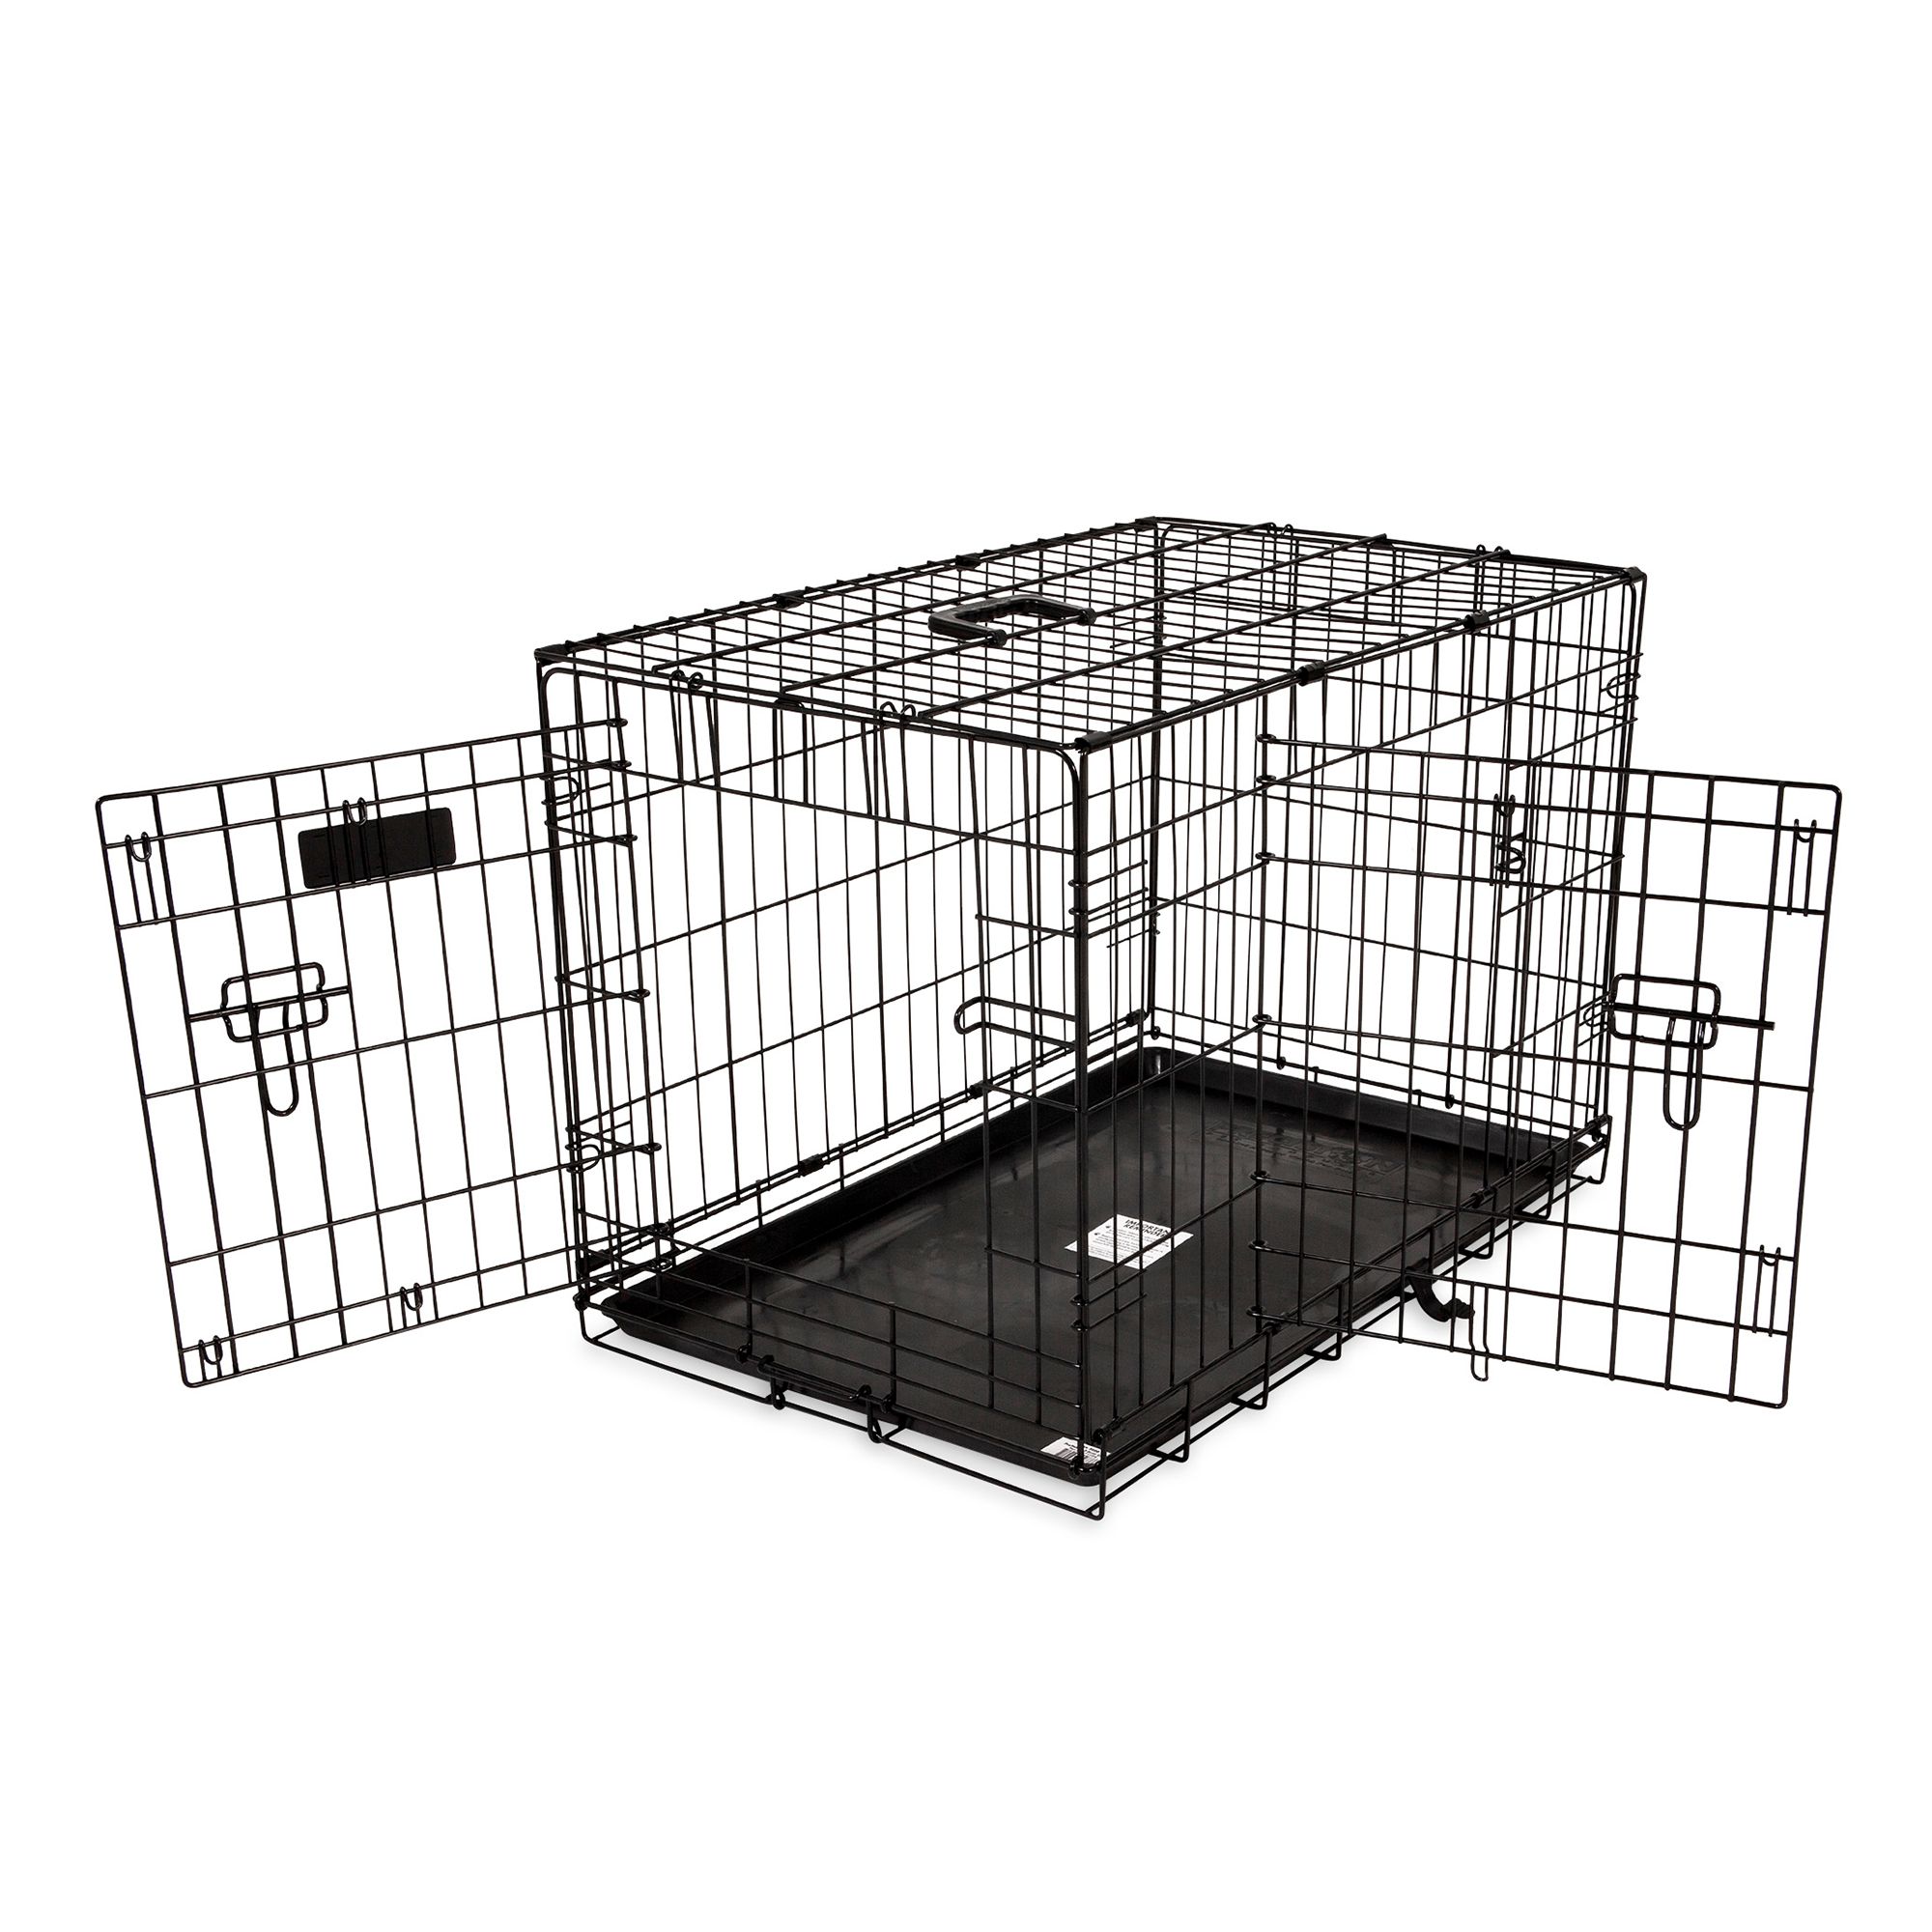 petsmart small dog crate